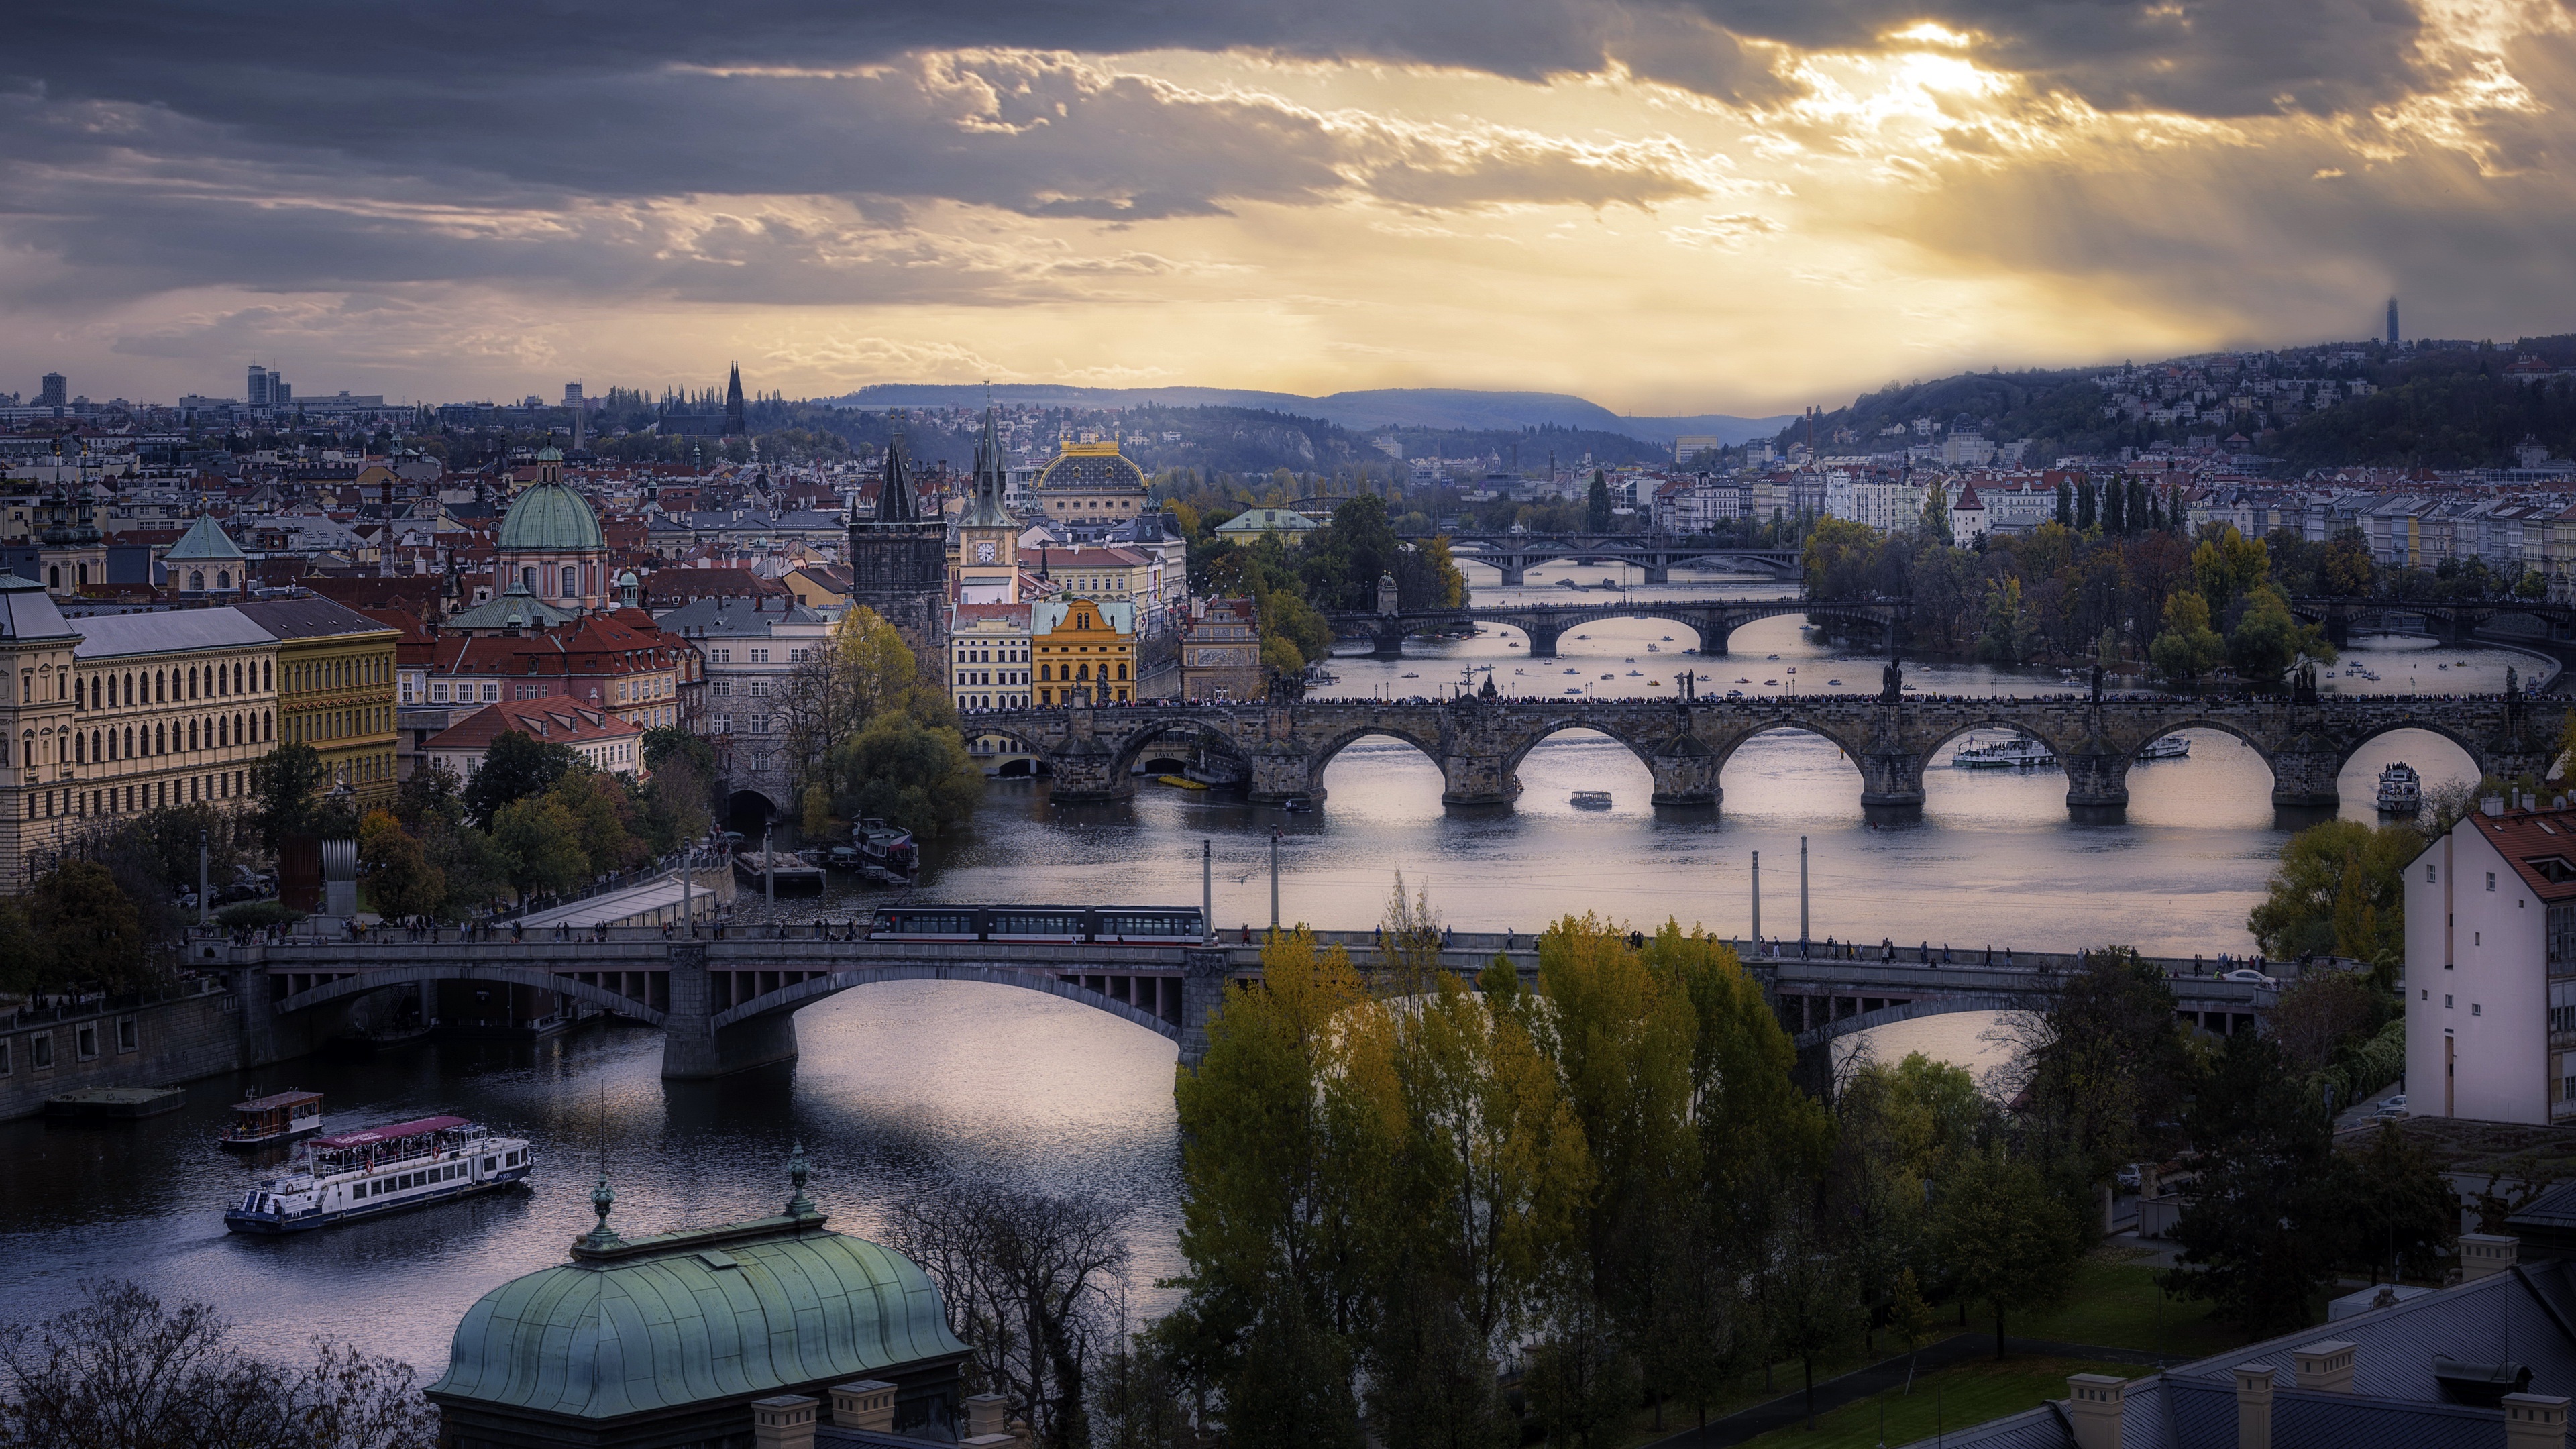 4K ultra HD wallpaper, Background image, Prague's beauty, High-resolution view, 3840x2160 4K Desktop